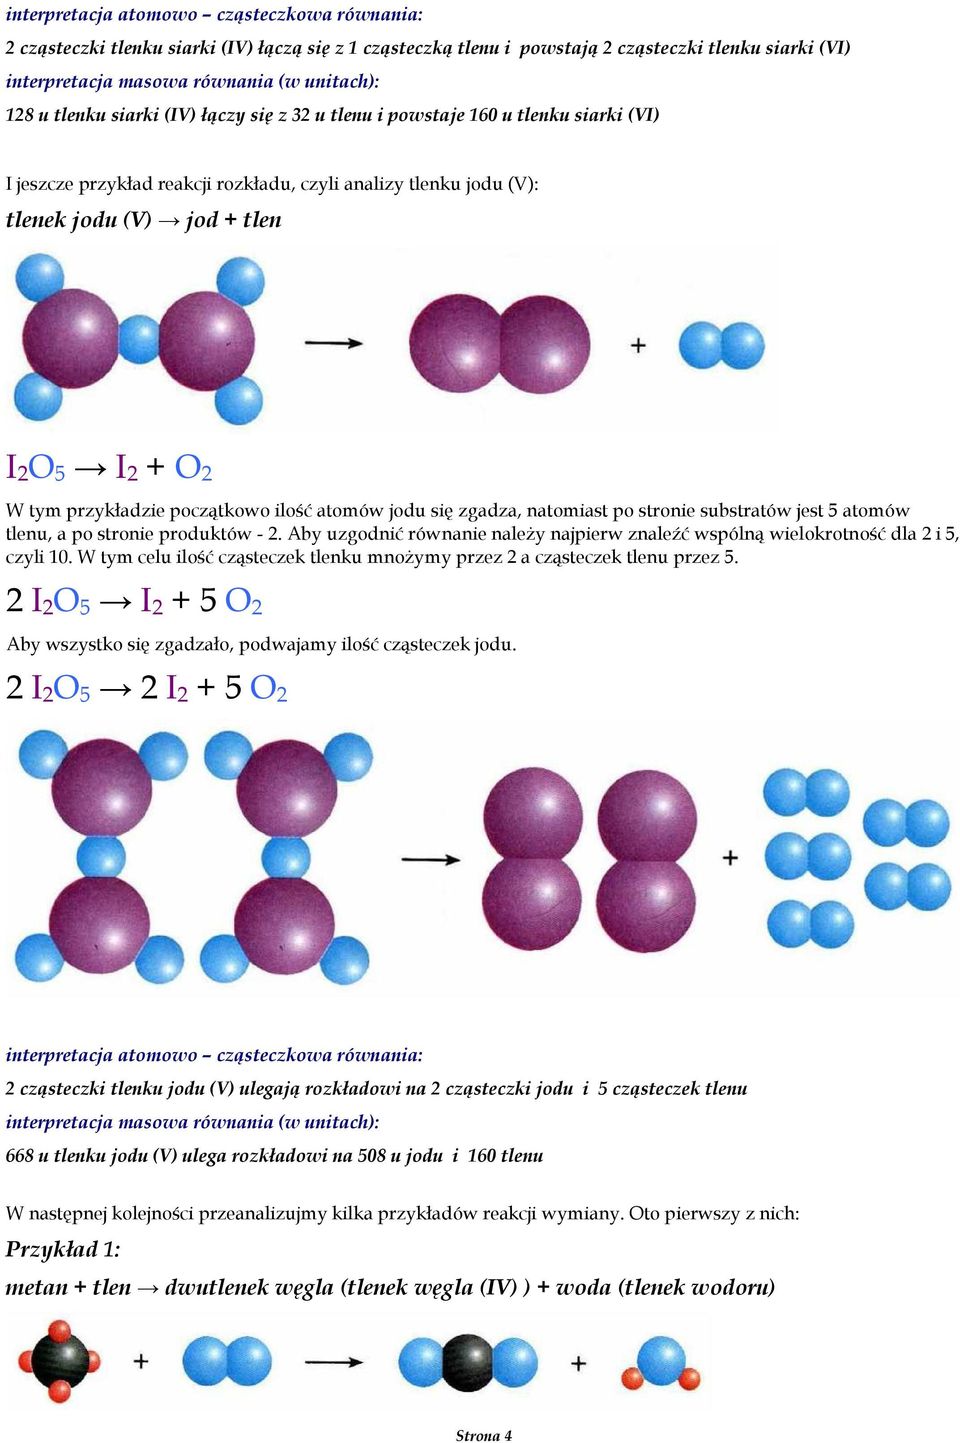 5 atomów tlenu, a po stronie produktów - 2. Aby uzgodnić równanie naleŝy najpierw znaleźć wspólną wielokrotność dla 2 i 5, czyli 10.